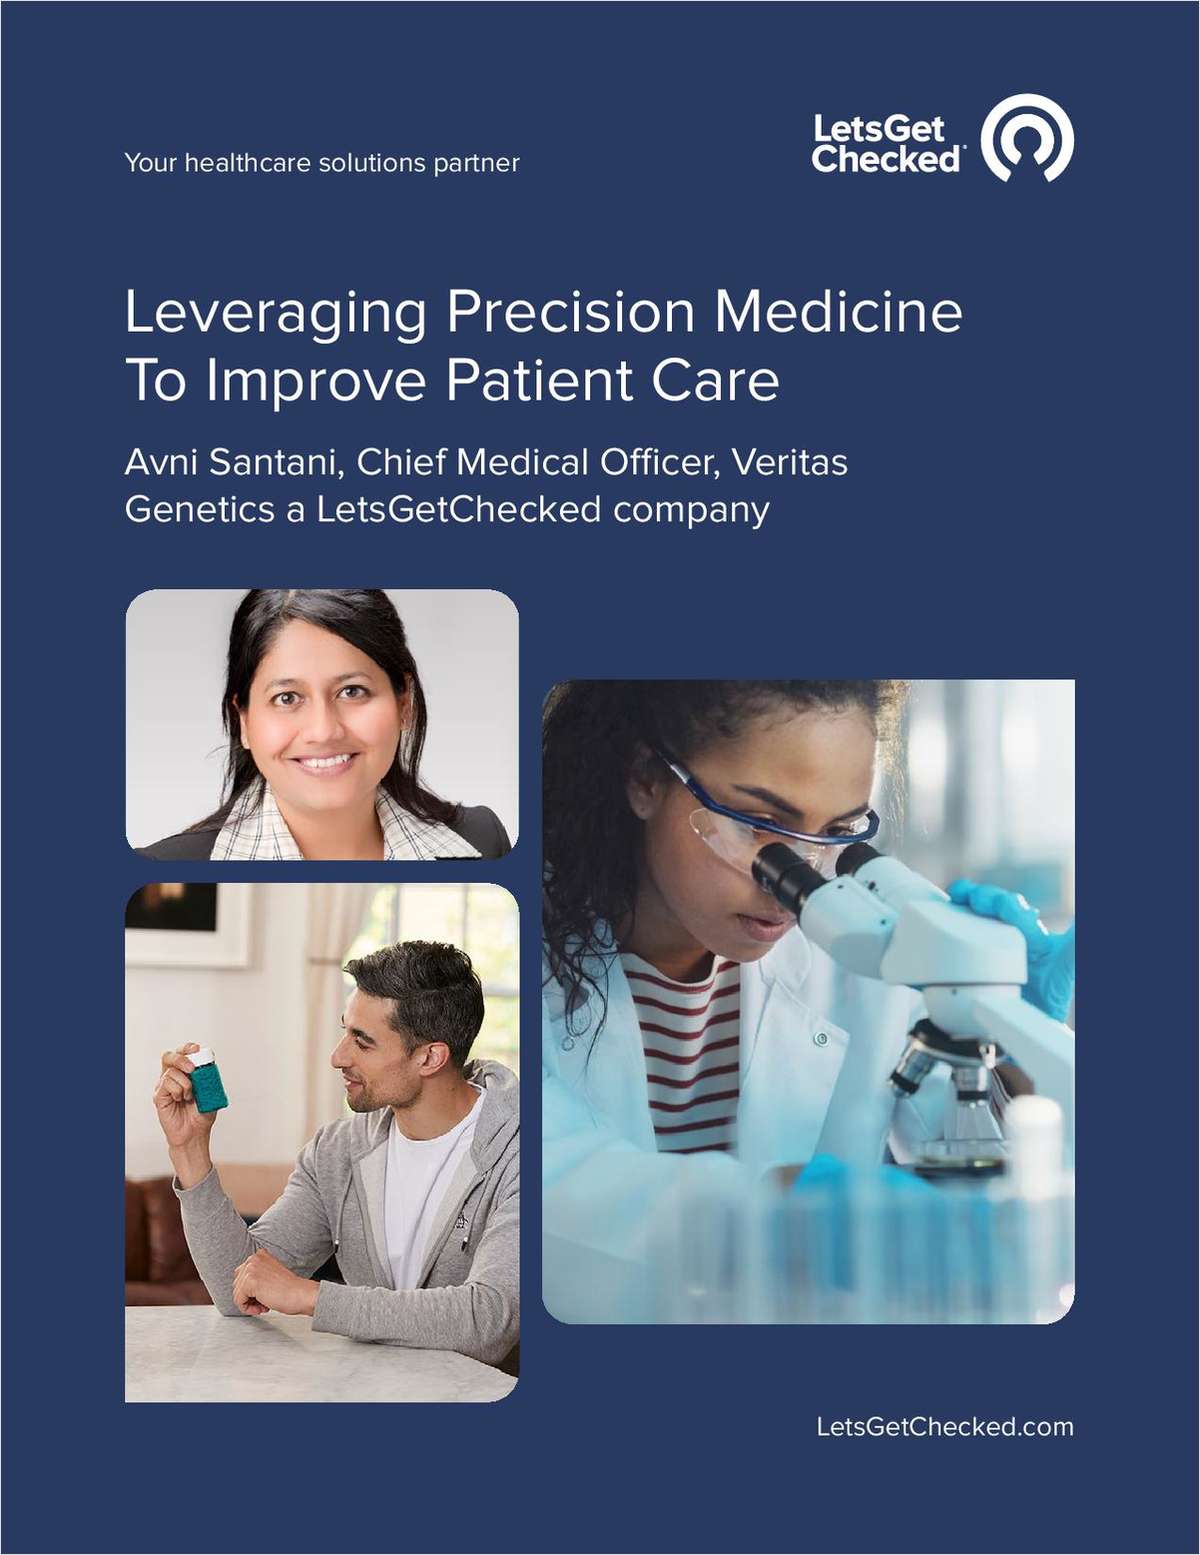 Leveraging Precision Medicine to Improve Patient Care